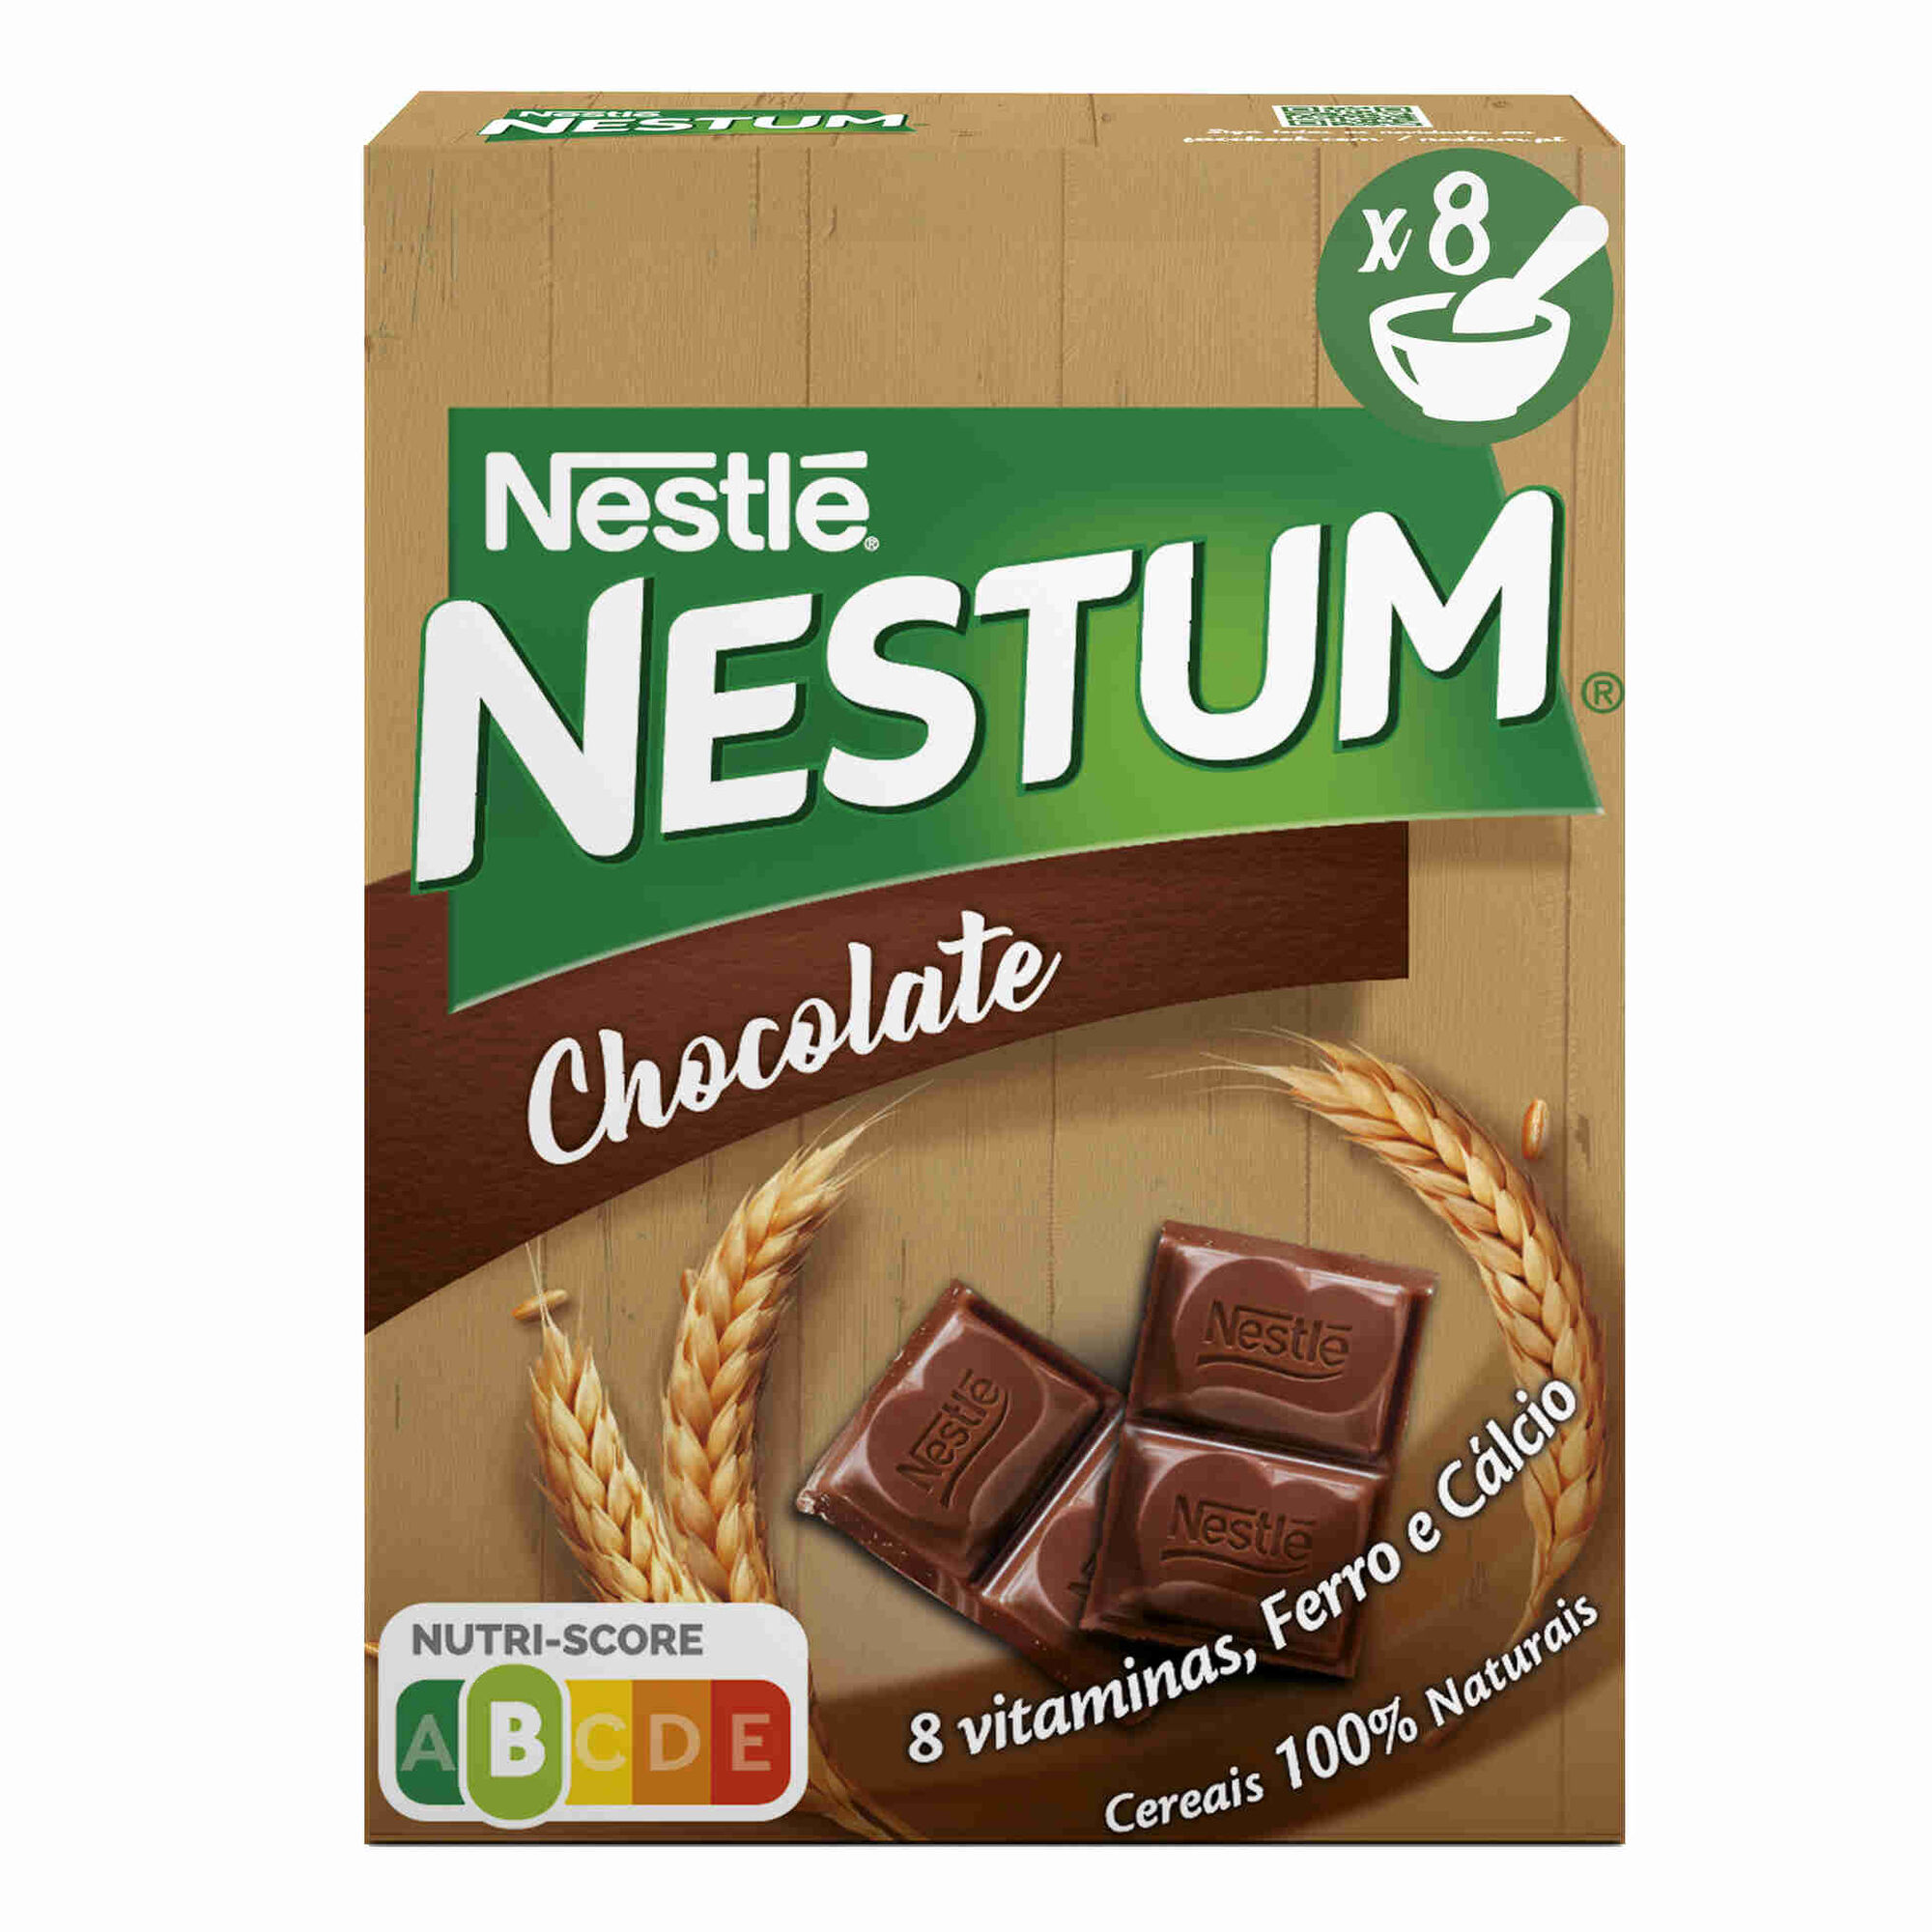 Nestum Chocolate